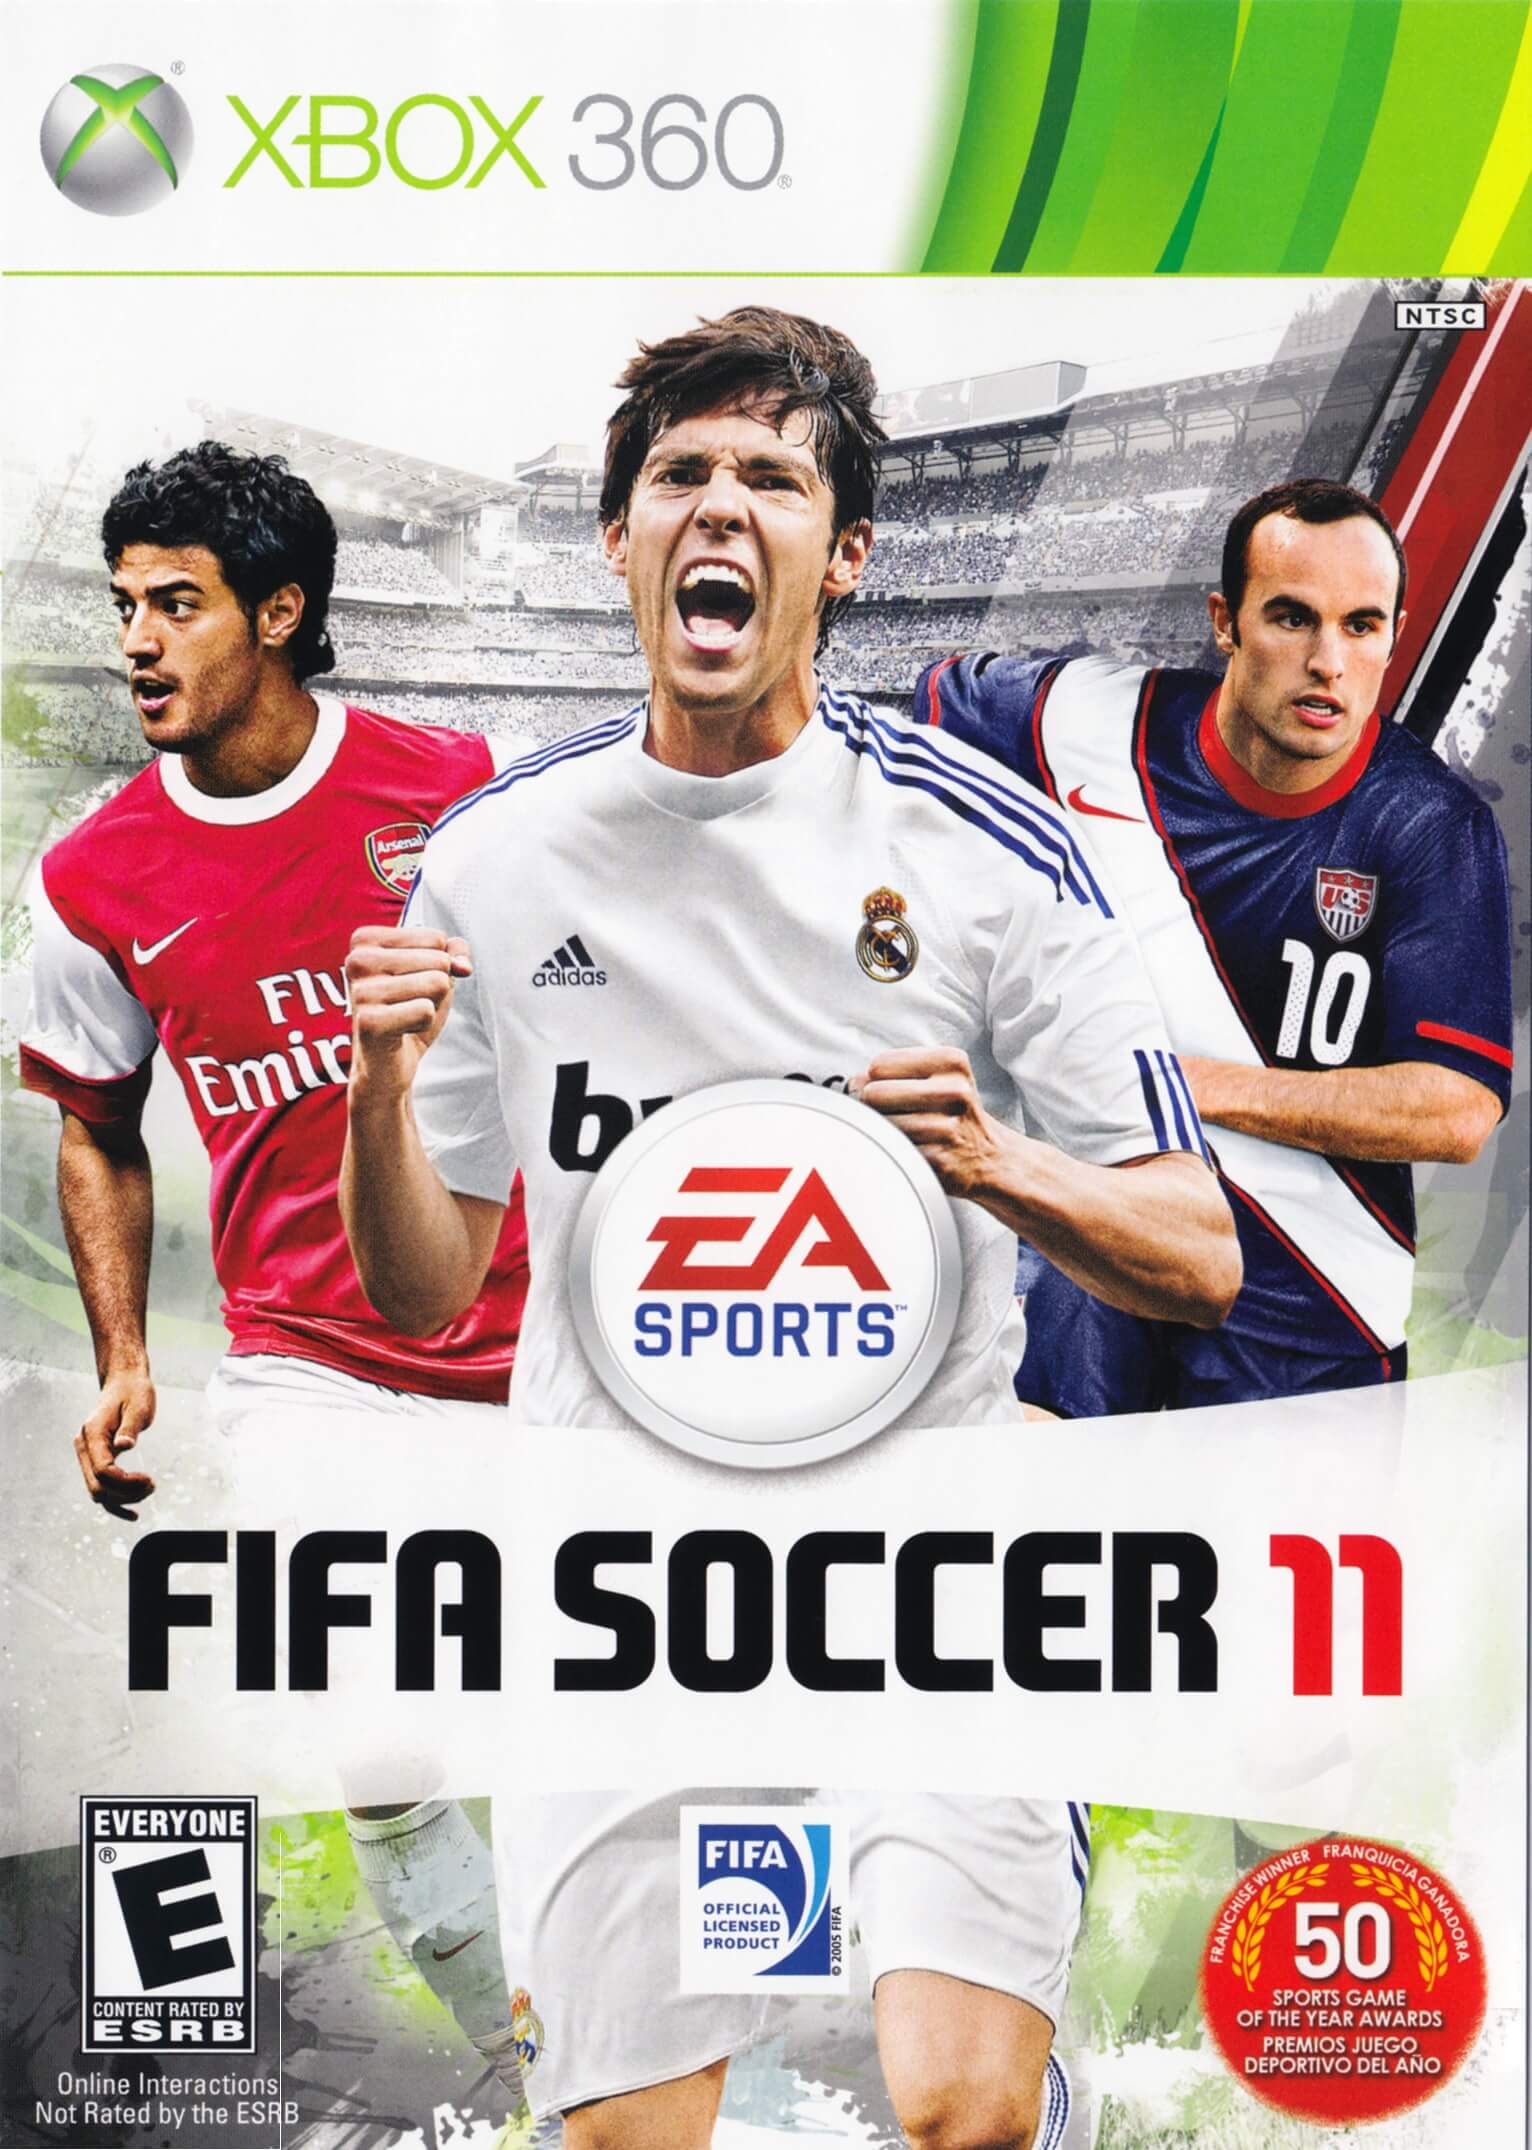 360 fifa. FIFA 20 Xbox 360. FIFA 11 (PSP). FIFA Soccer 11 меню. FIFA 11 обложка.